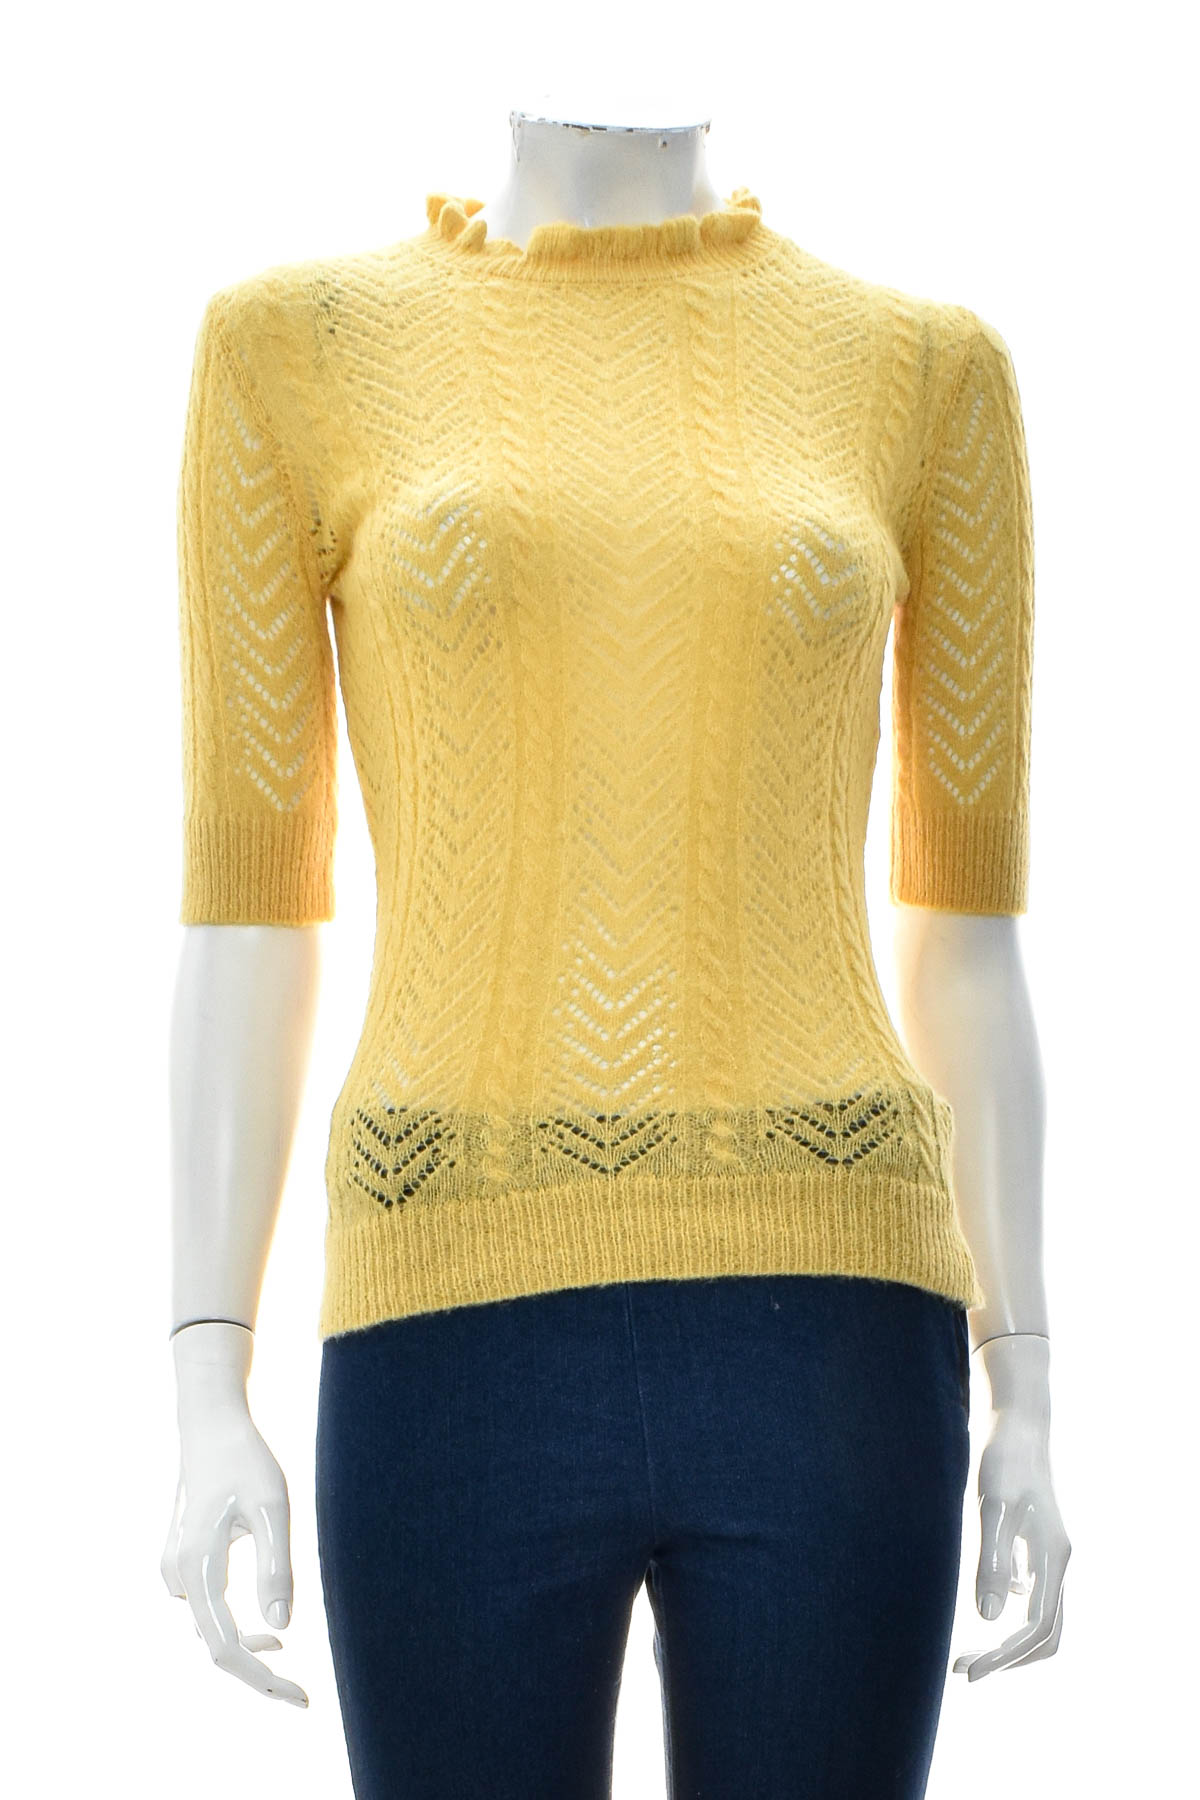 Women's sweater - HALLHUBER DONNA - 0